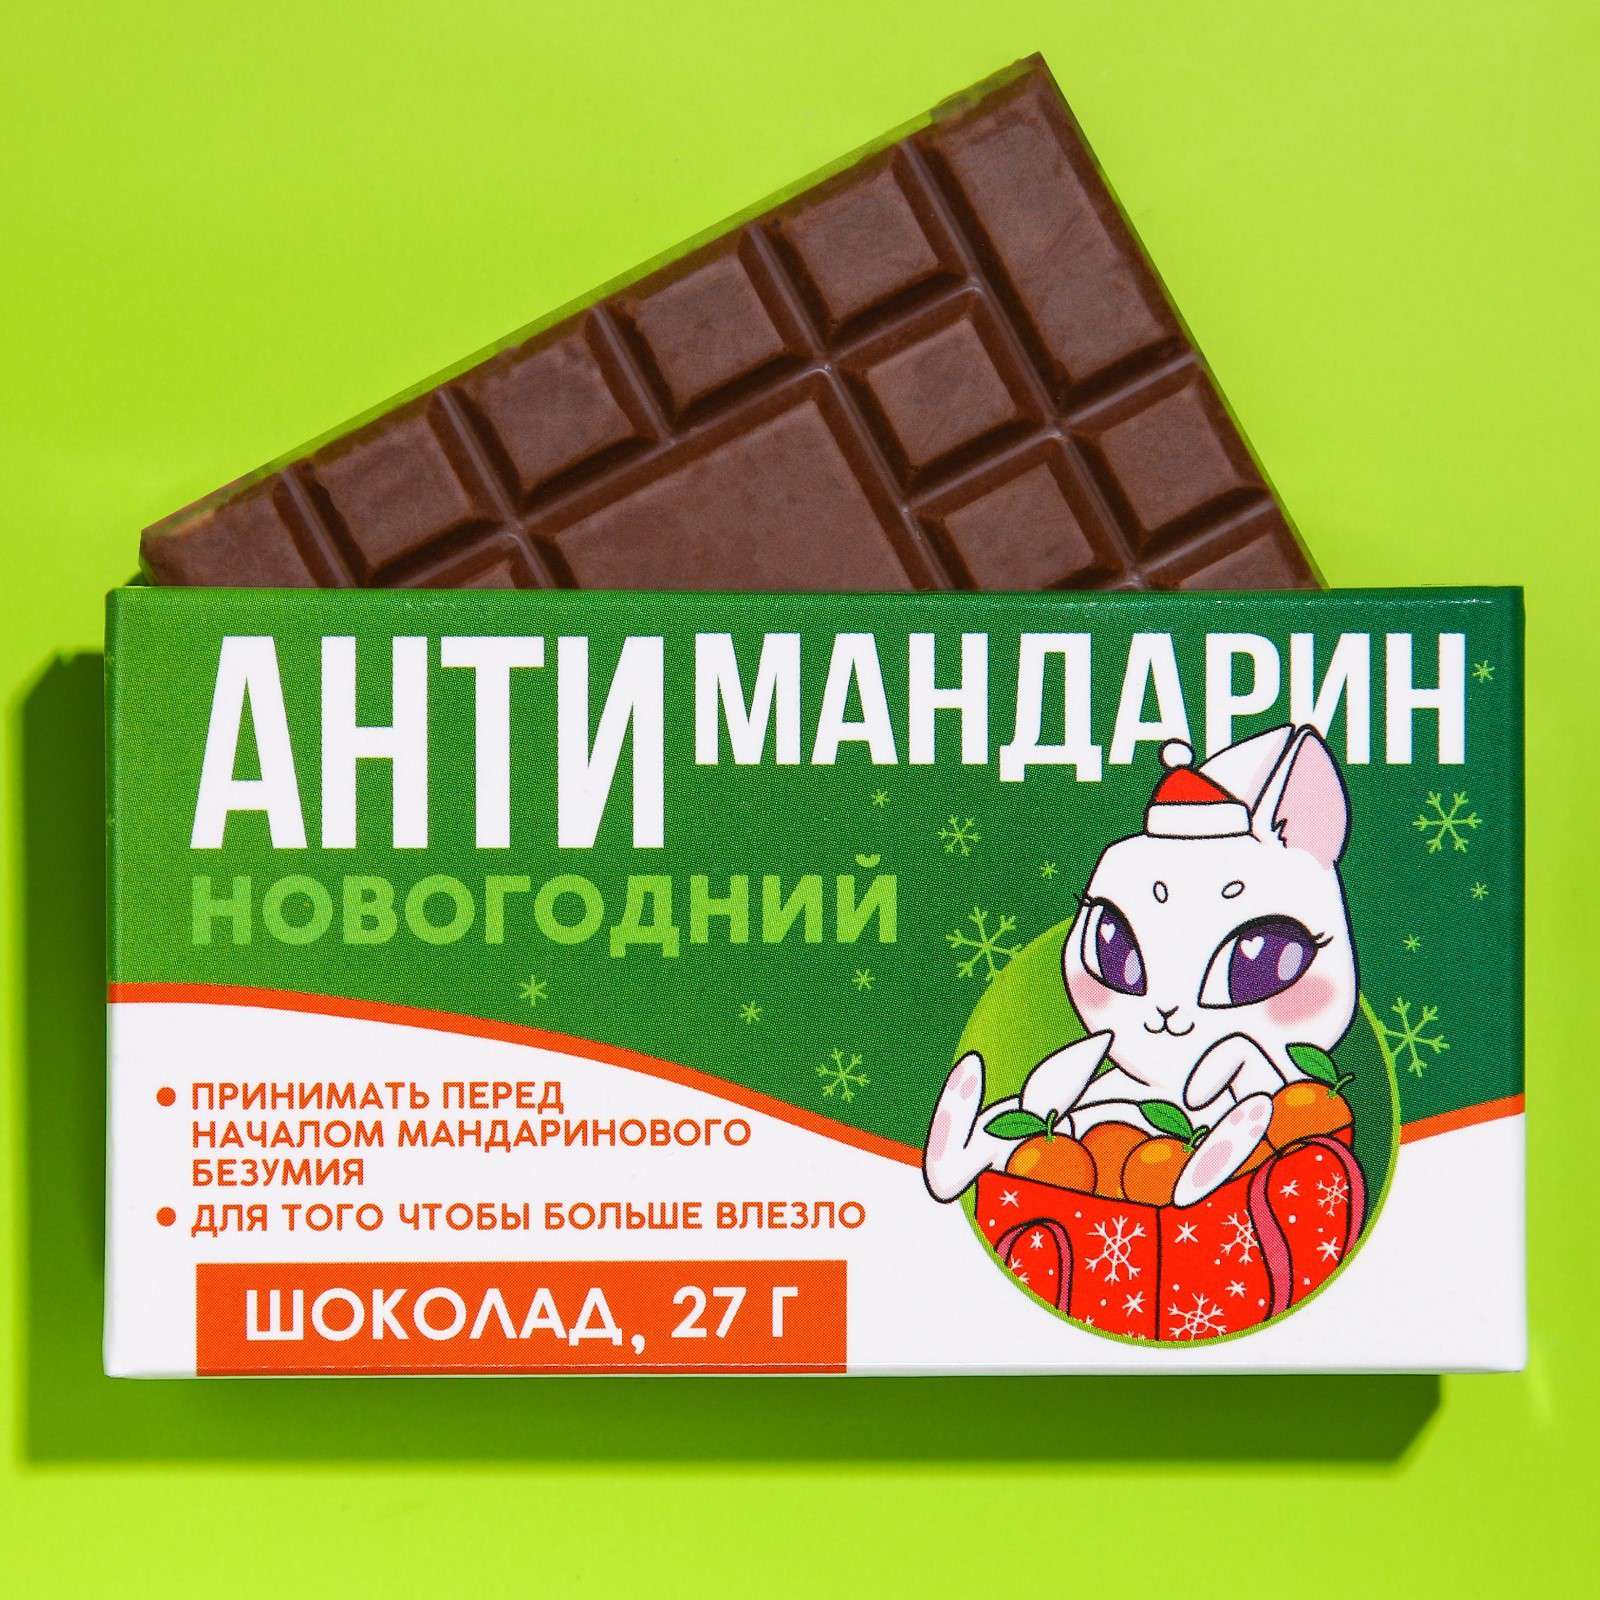 Шоколад 9242812 молочный Антимандарин зайка 27г - Казань 